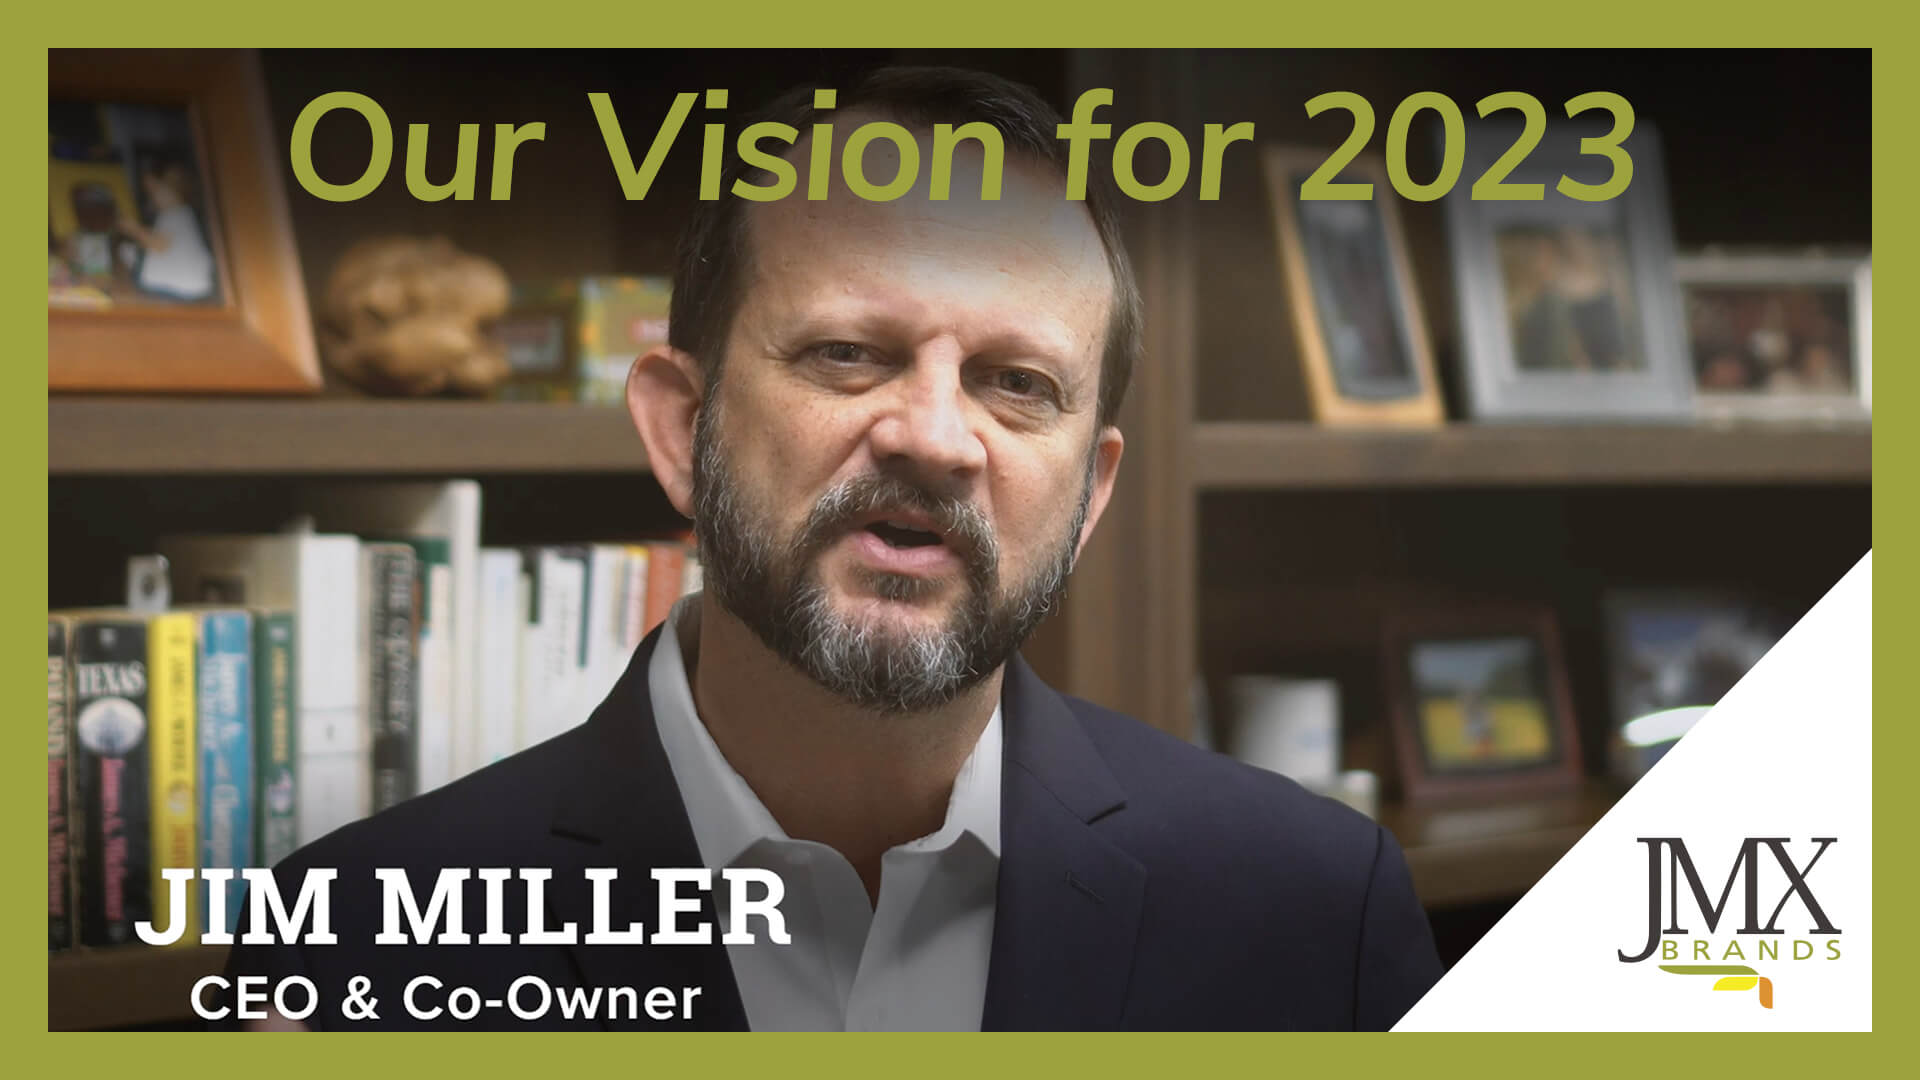 JMX Brands Vision for 2023 Video